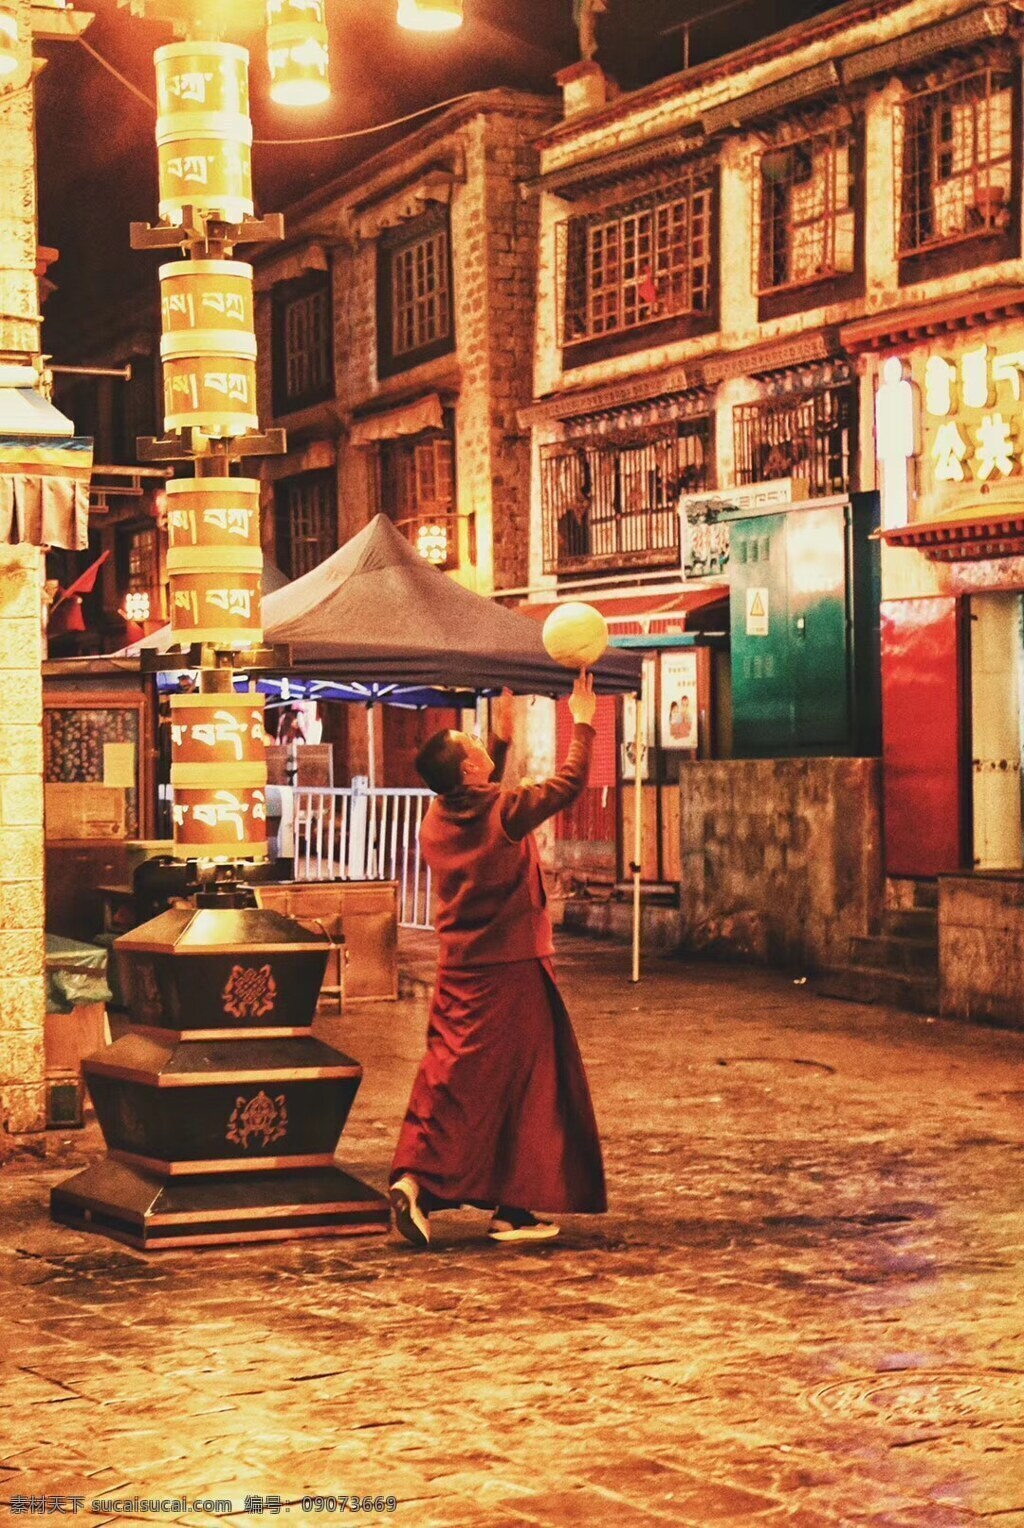 西藏背景图 背景 旅游摄影 旅行游记 灯红酒绿 国内旅游